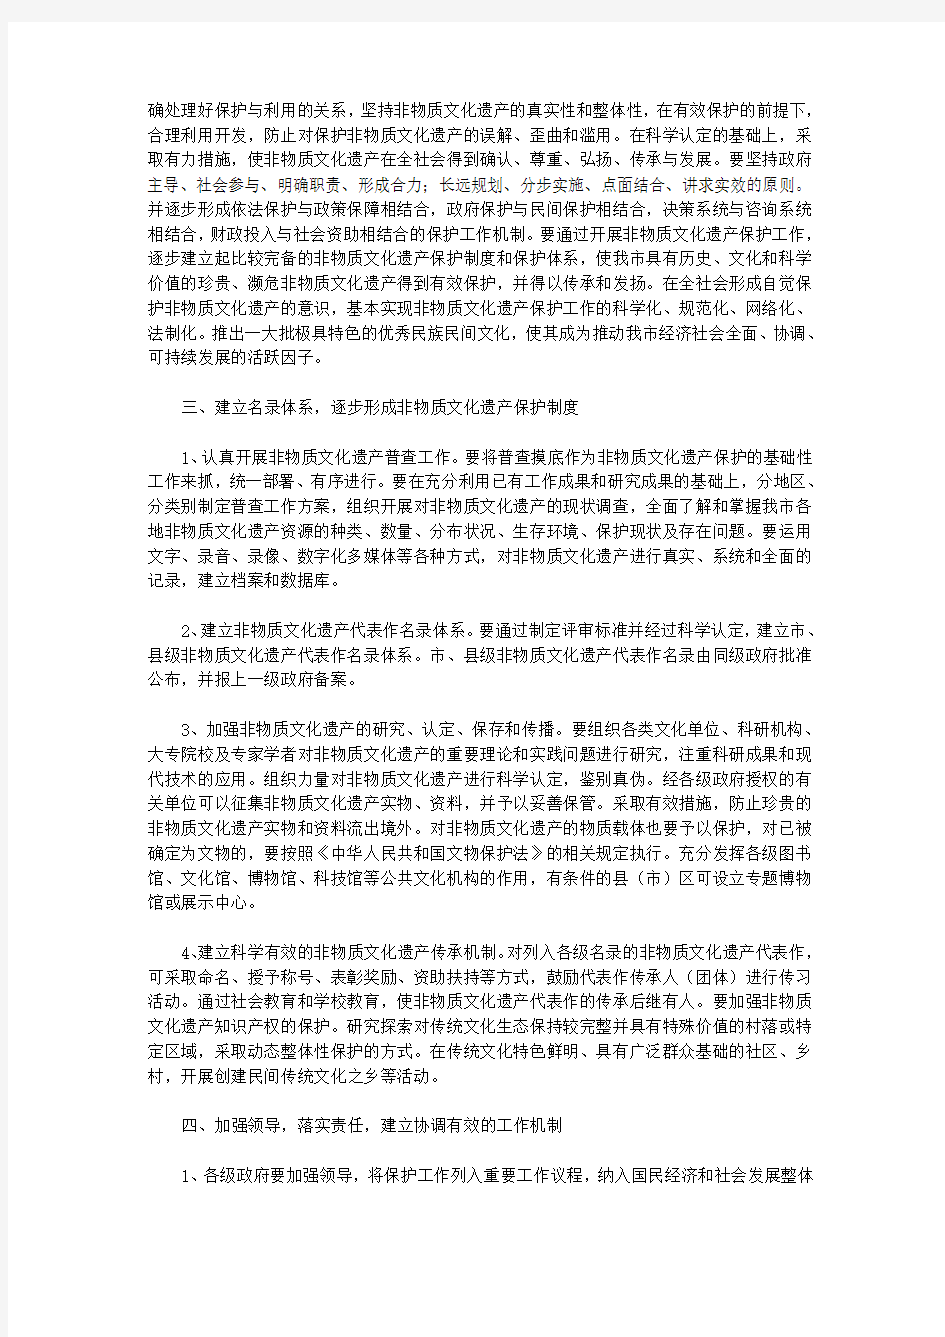 唐山市人民政府办公厅关于加强全市非物质文化遗产保护工作的意见